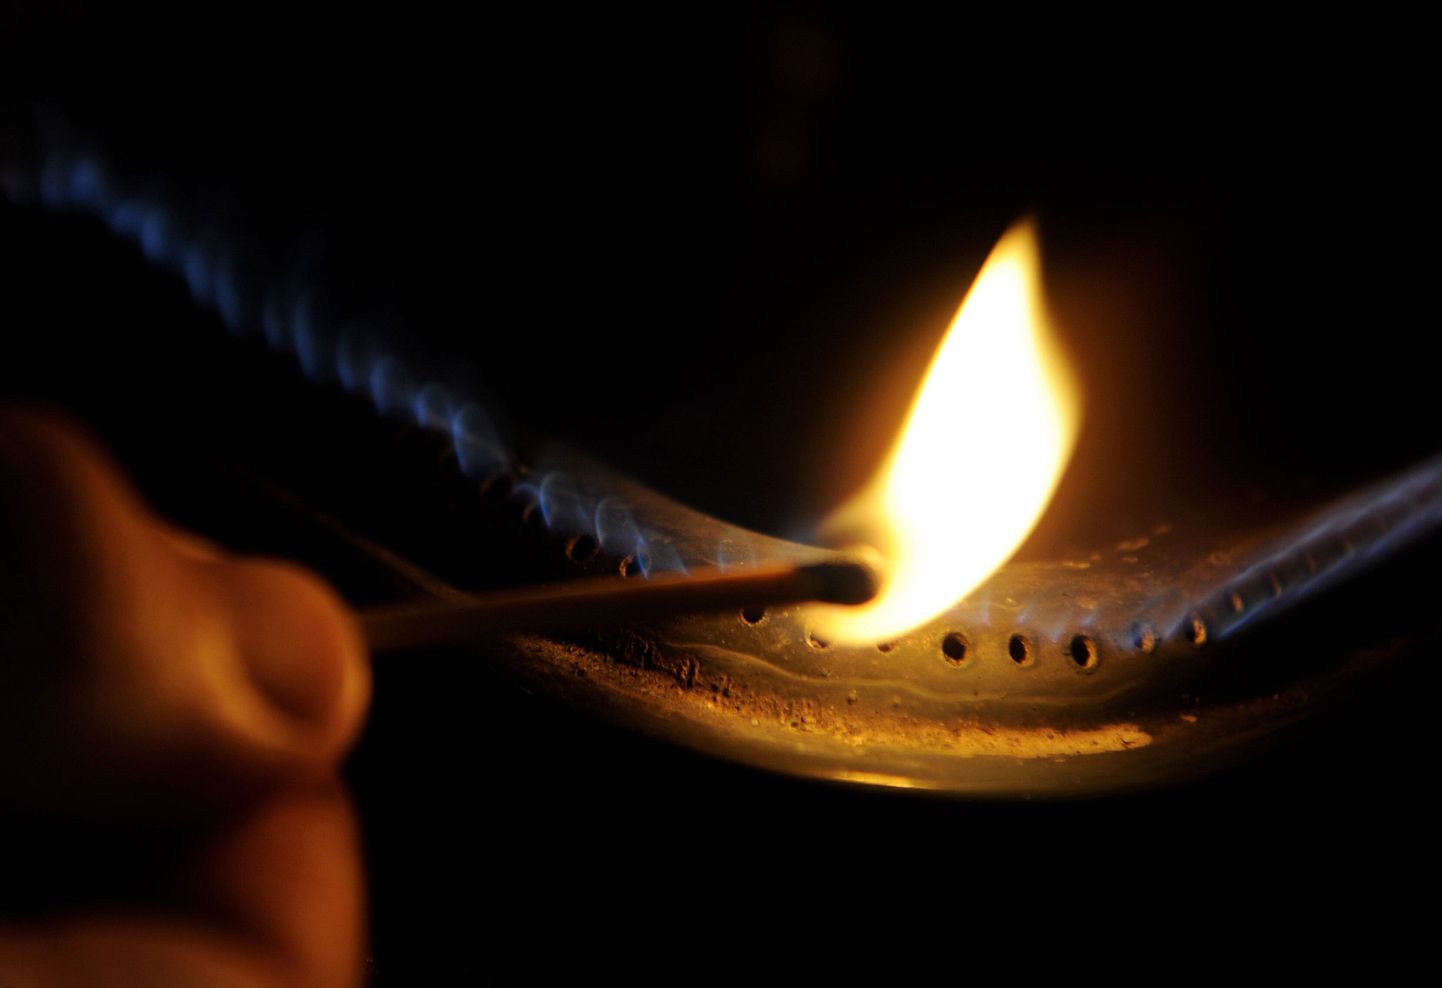 К отравлению угарным газом может привести неправильно отрегулированная газовая плита.